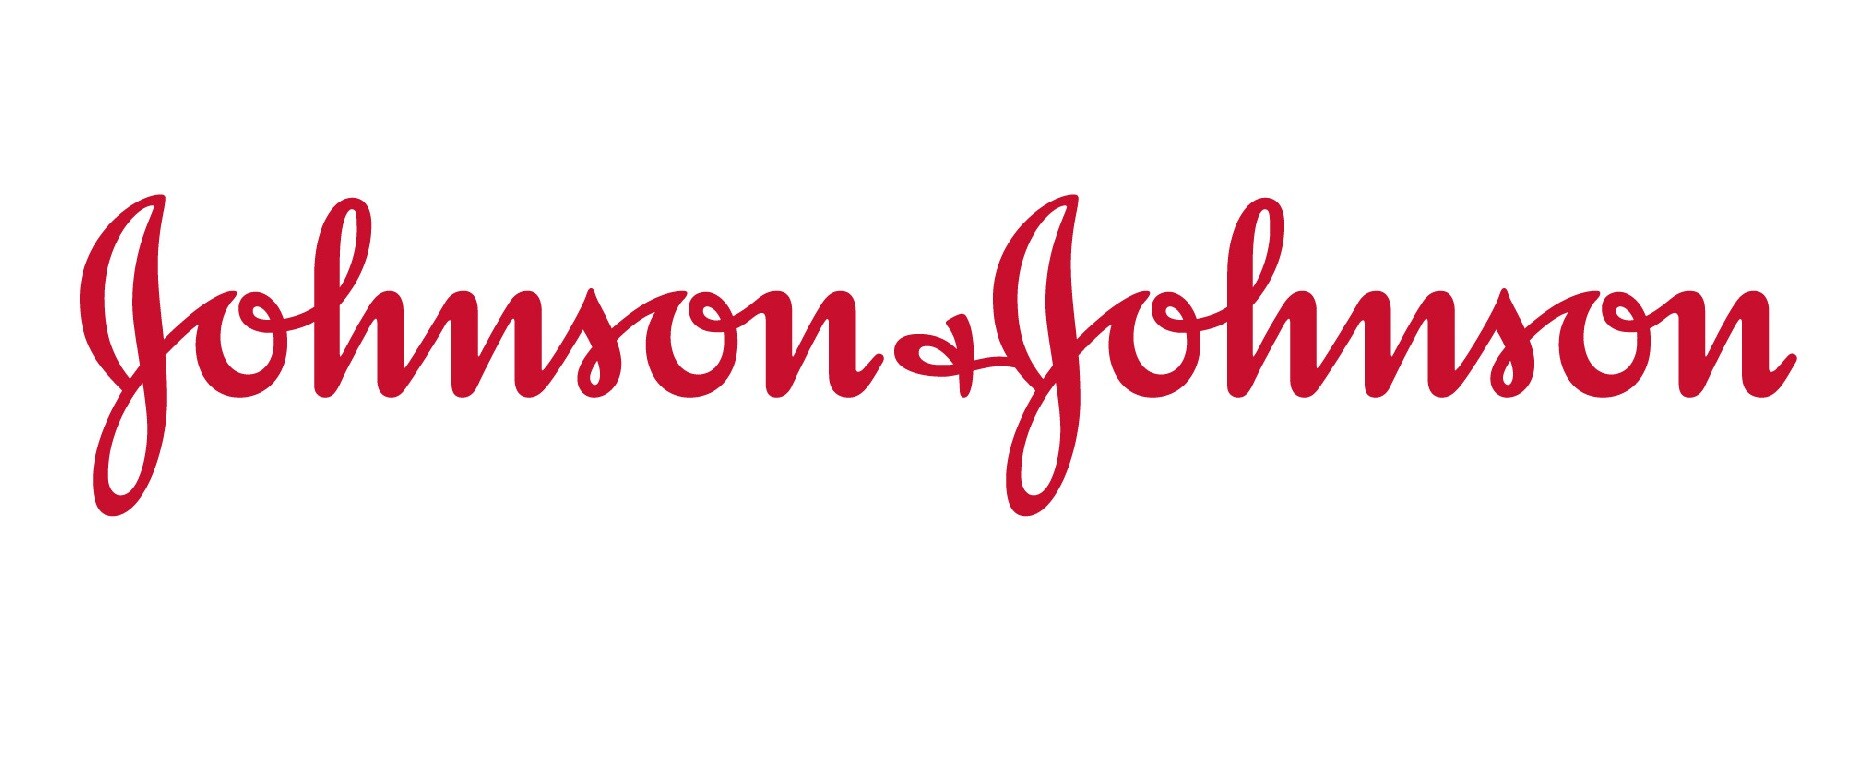 กลุ่มบริษัท จอห์นสัน แอนด์ จอห์นสัน ในประเทศไทย ขยายสวัสดิการด้านสุขภาพครอบคลุมพนักงานที่มีคู่ชีวิตเพศเดียวกัน